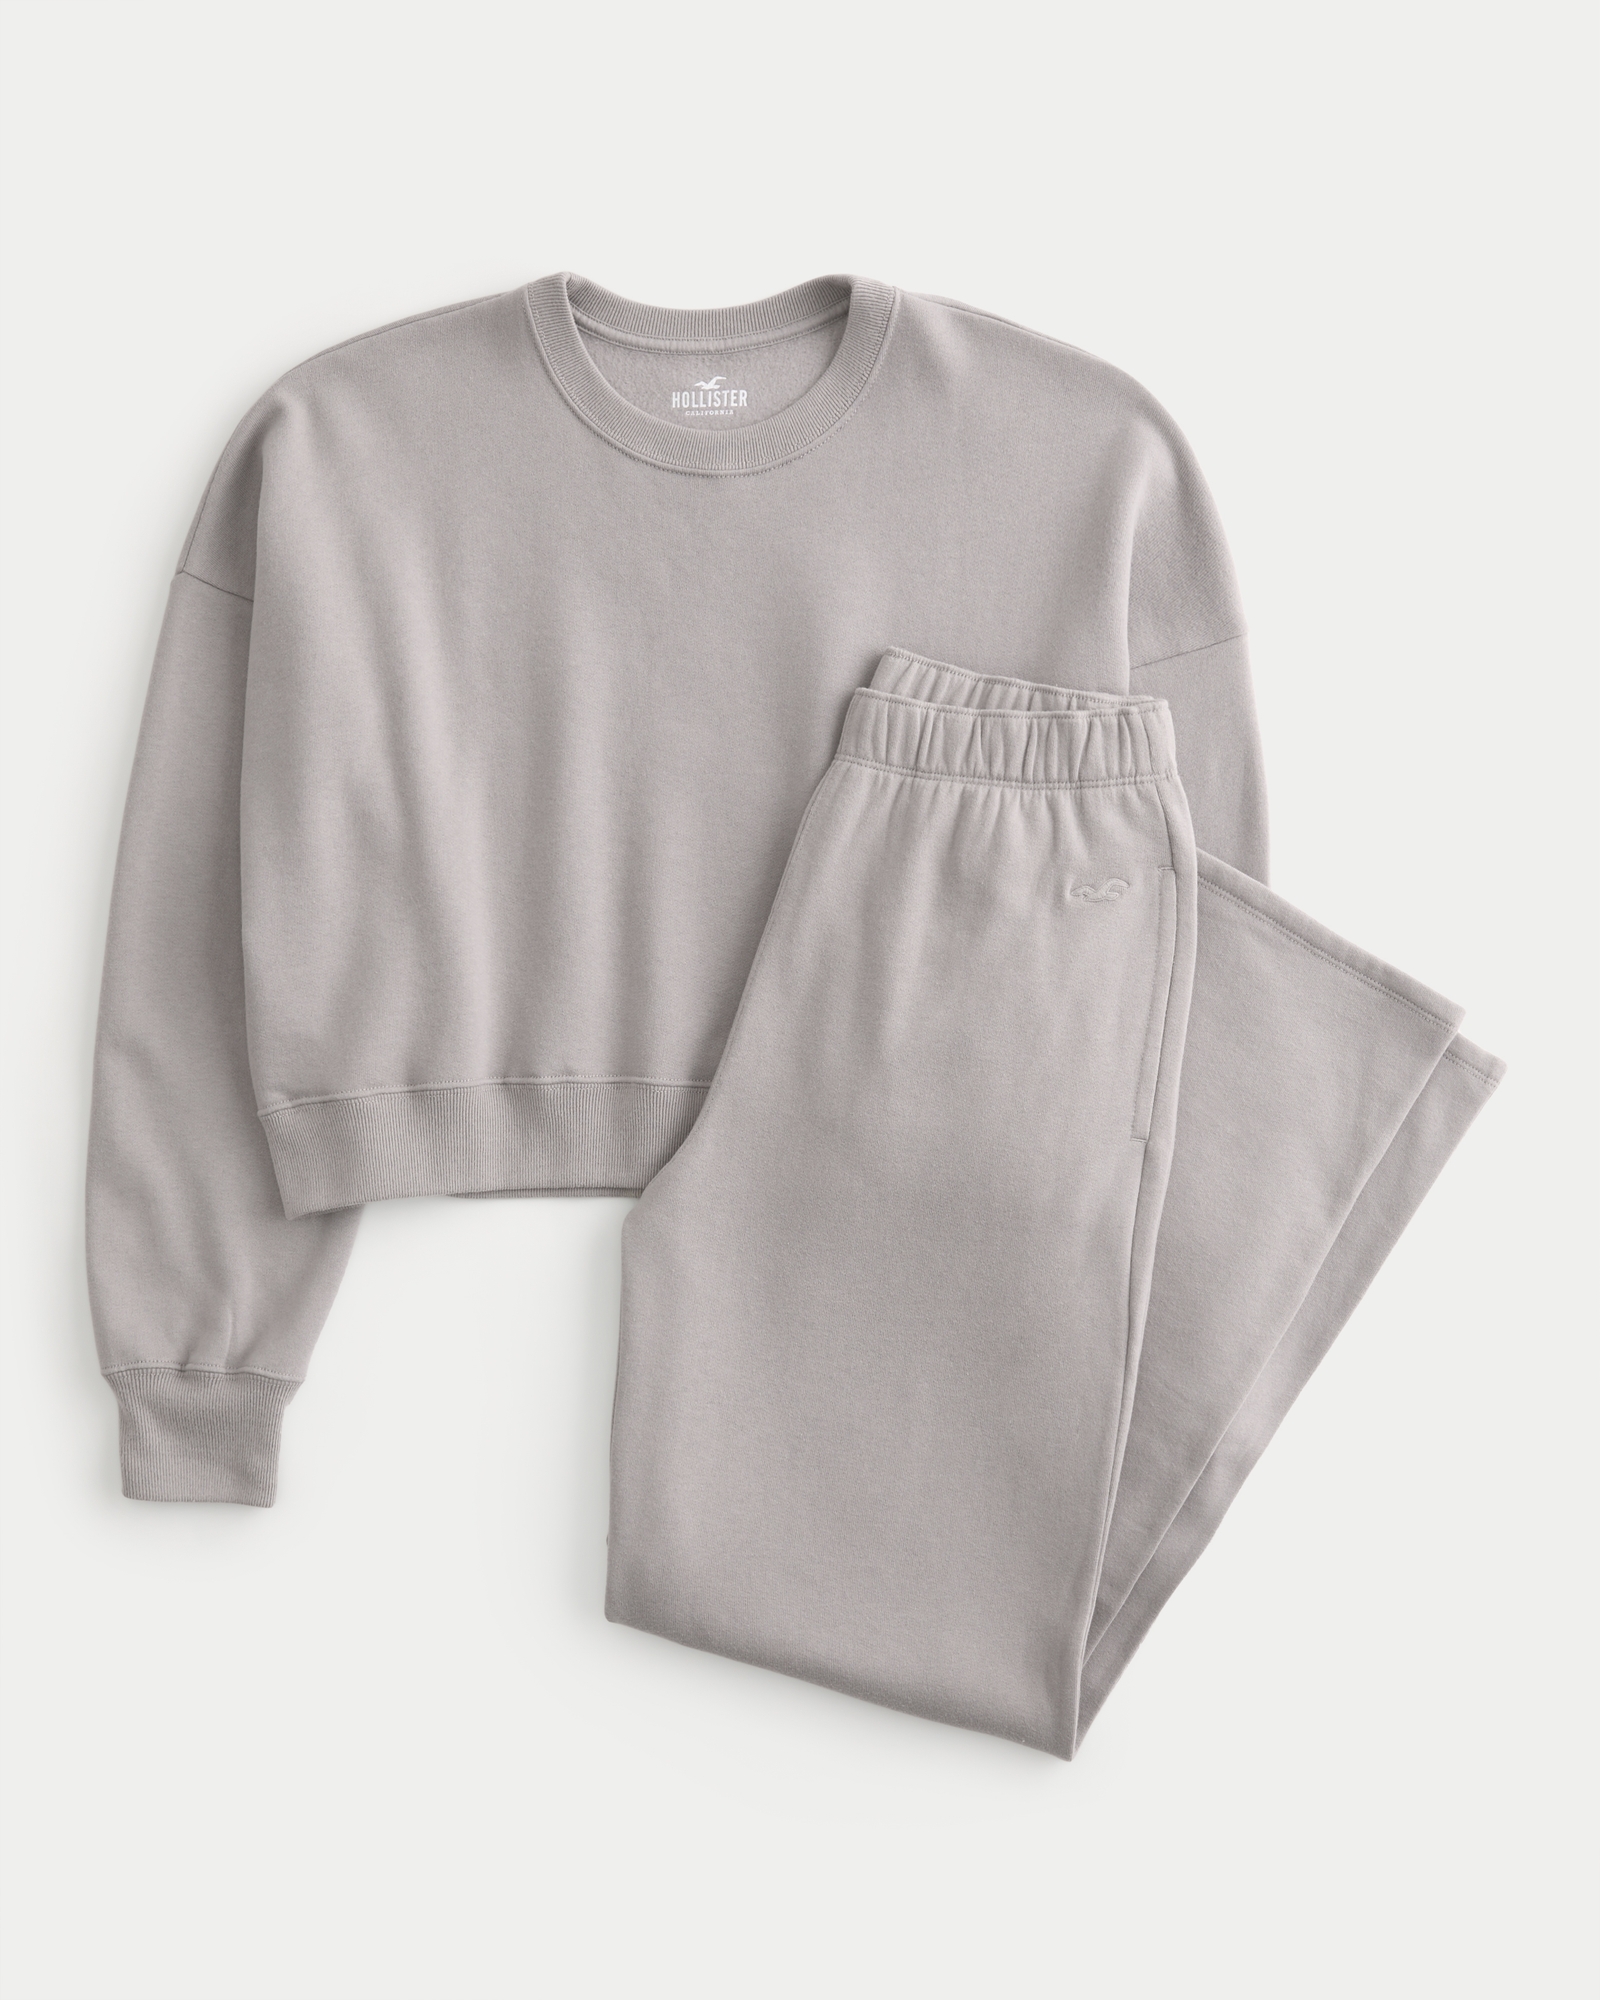 Women's Sweatshirt & Wide-Leg Sweatpants Bundle, Women's Clearance